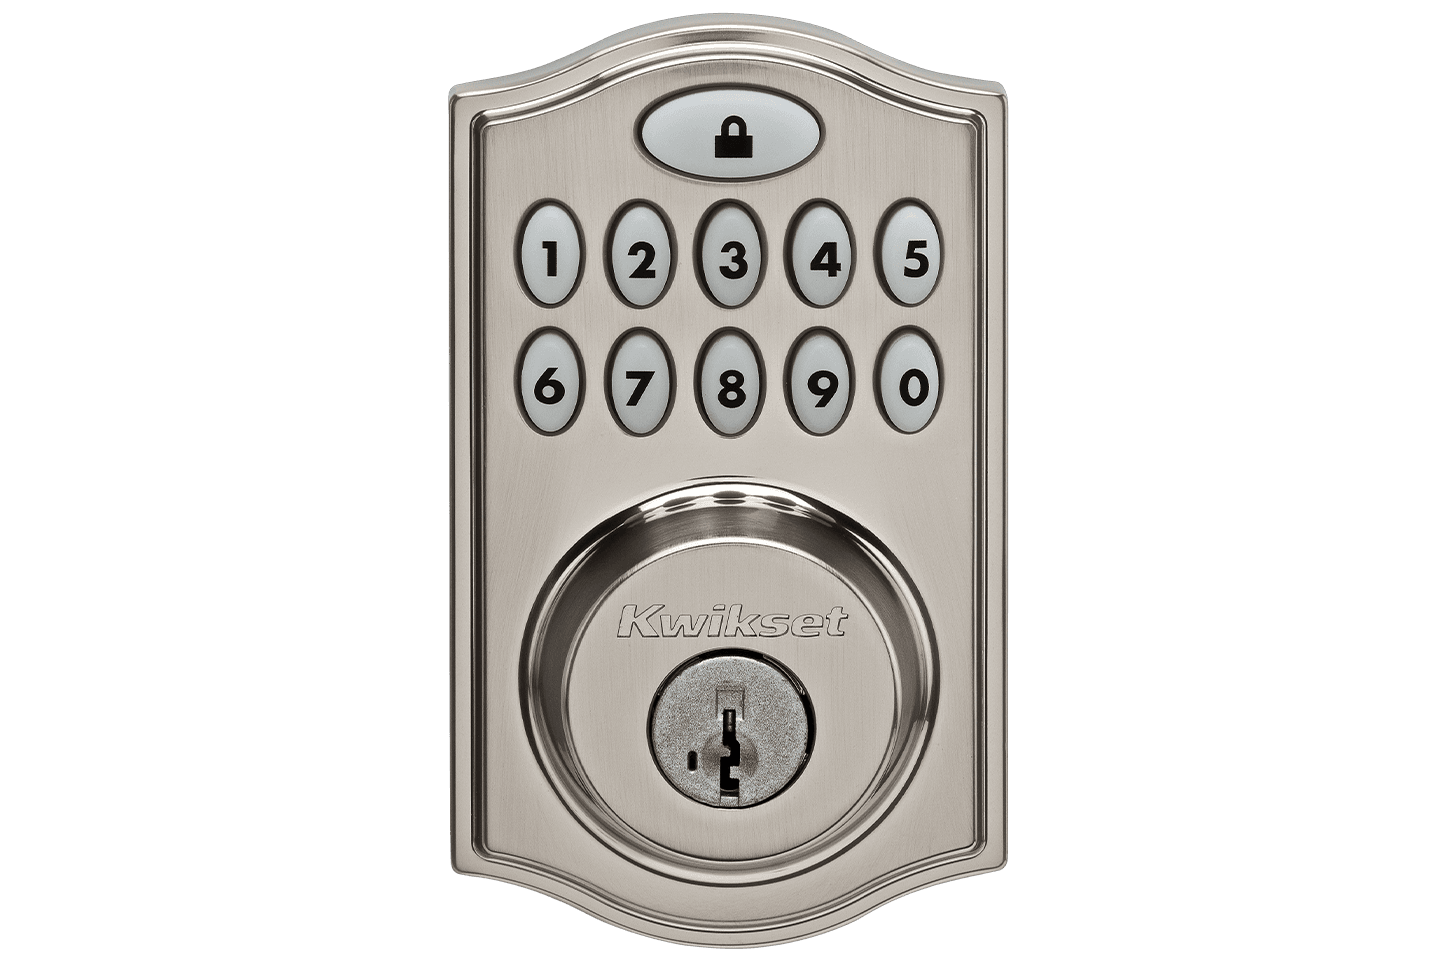 Image of Kwikset smart lock